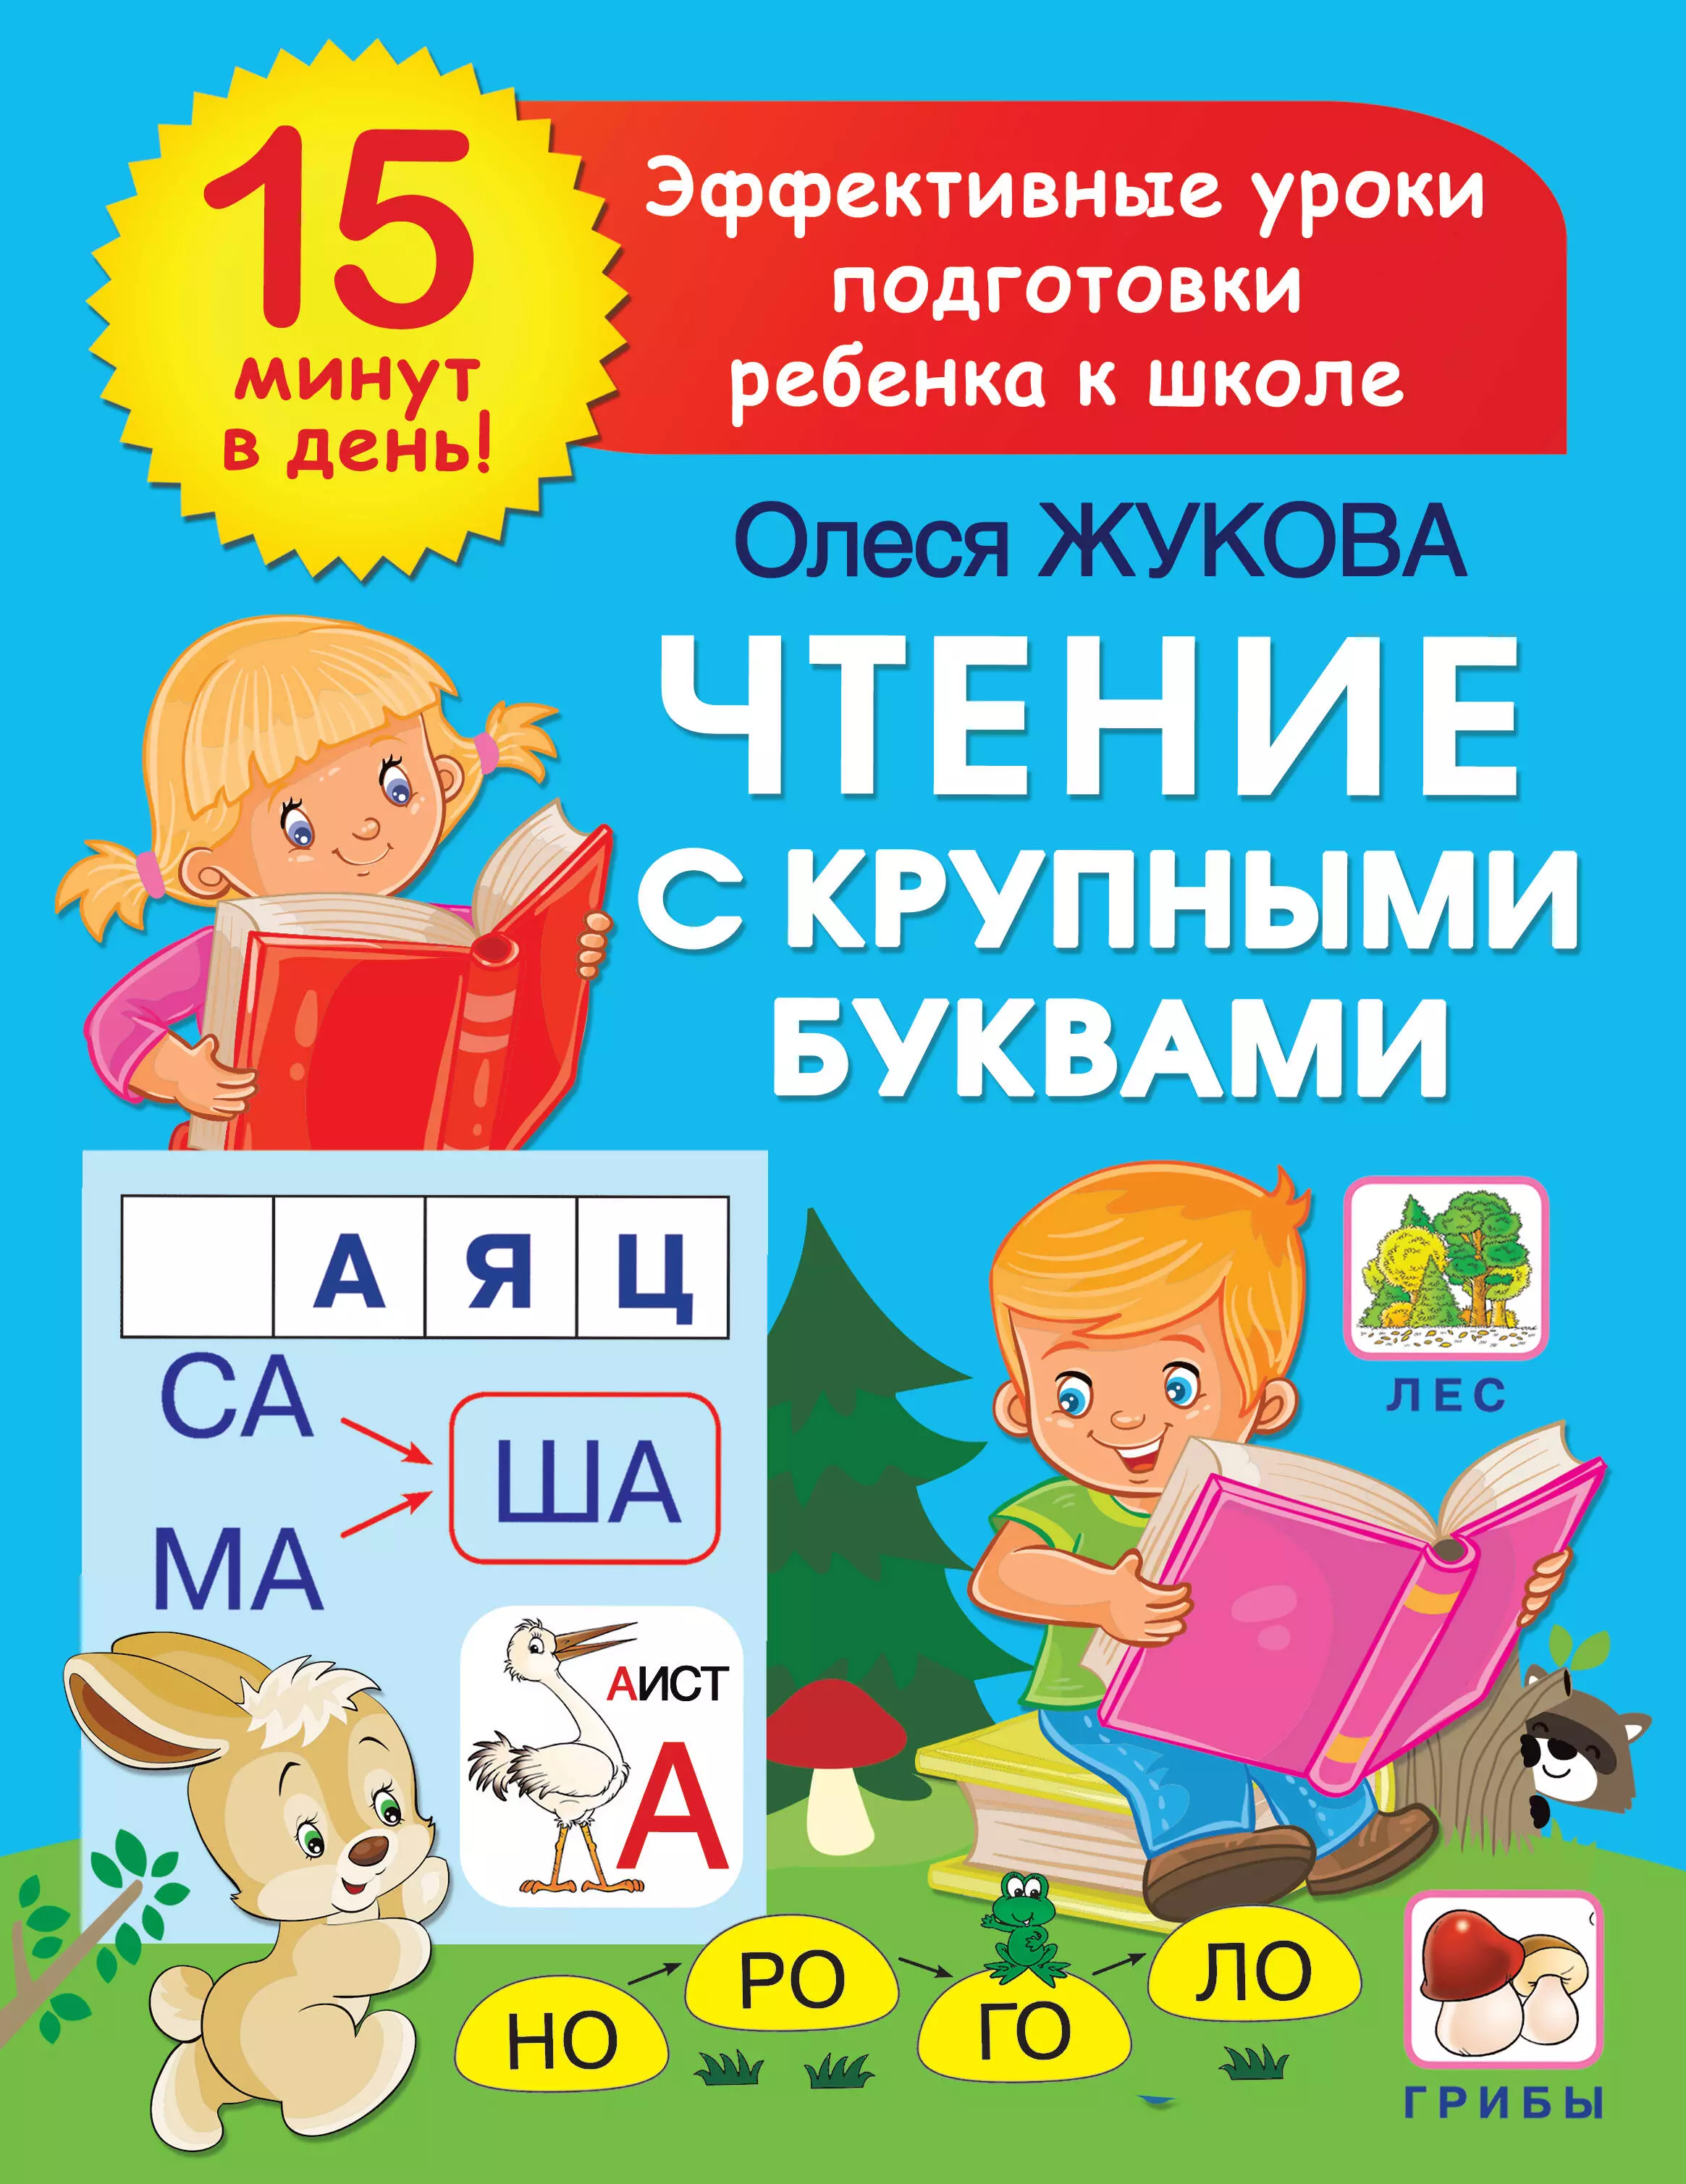 Жукова Олеся Станиславовна Чтение с крупными буквами жукова олеся станиславовна азбука крупными буквами для малышей